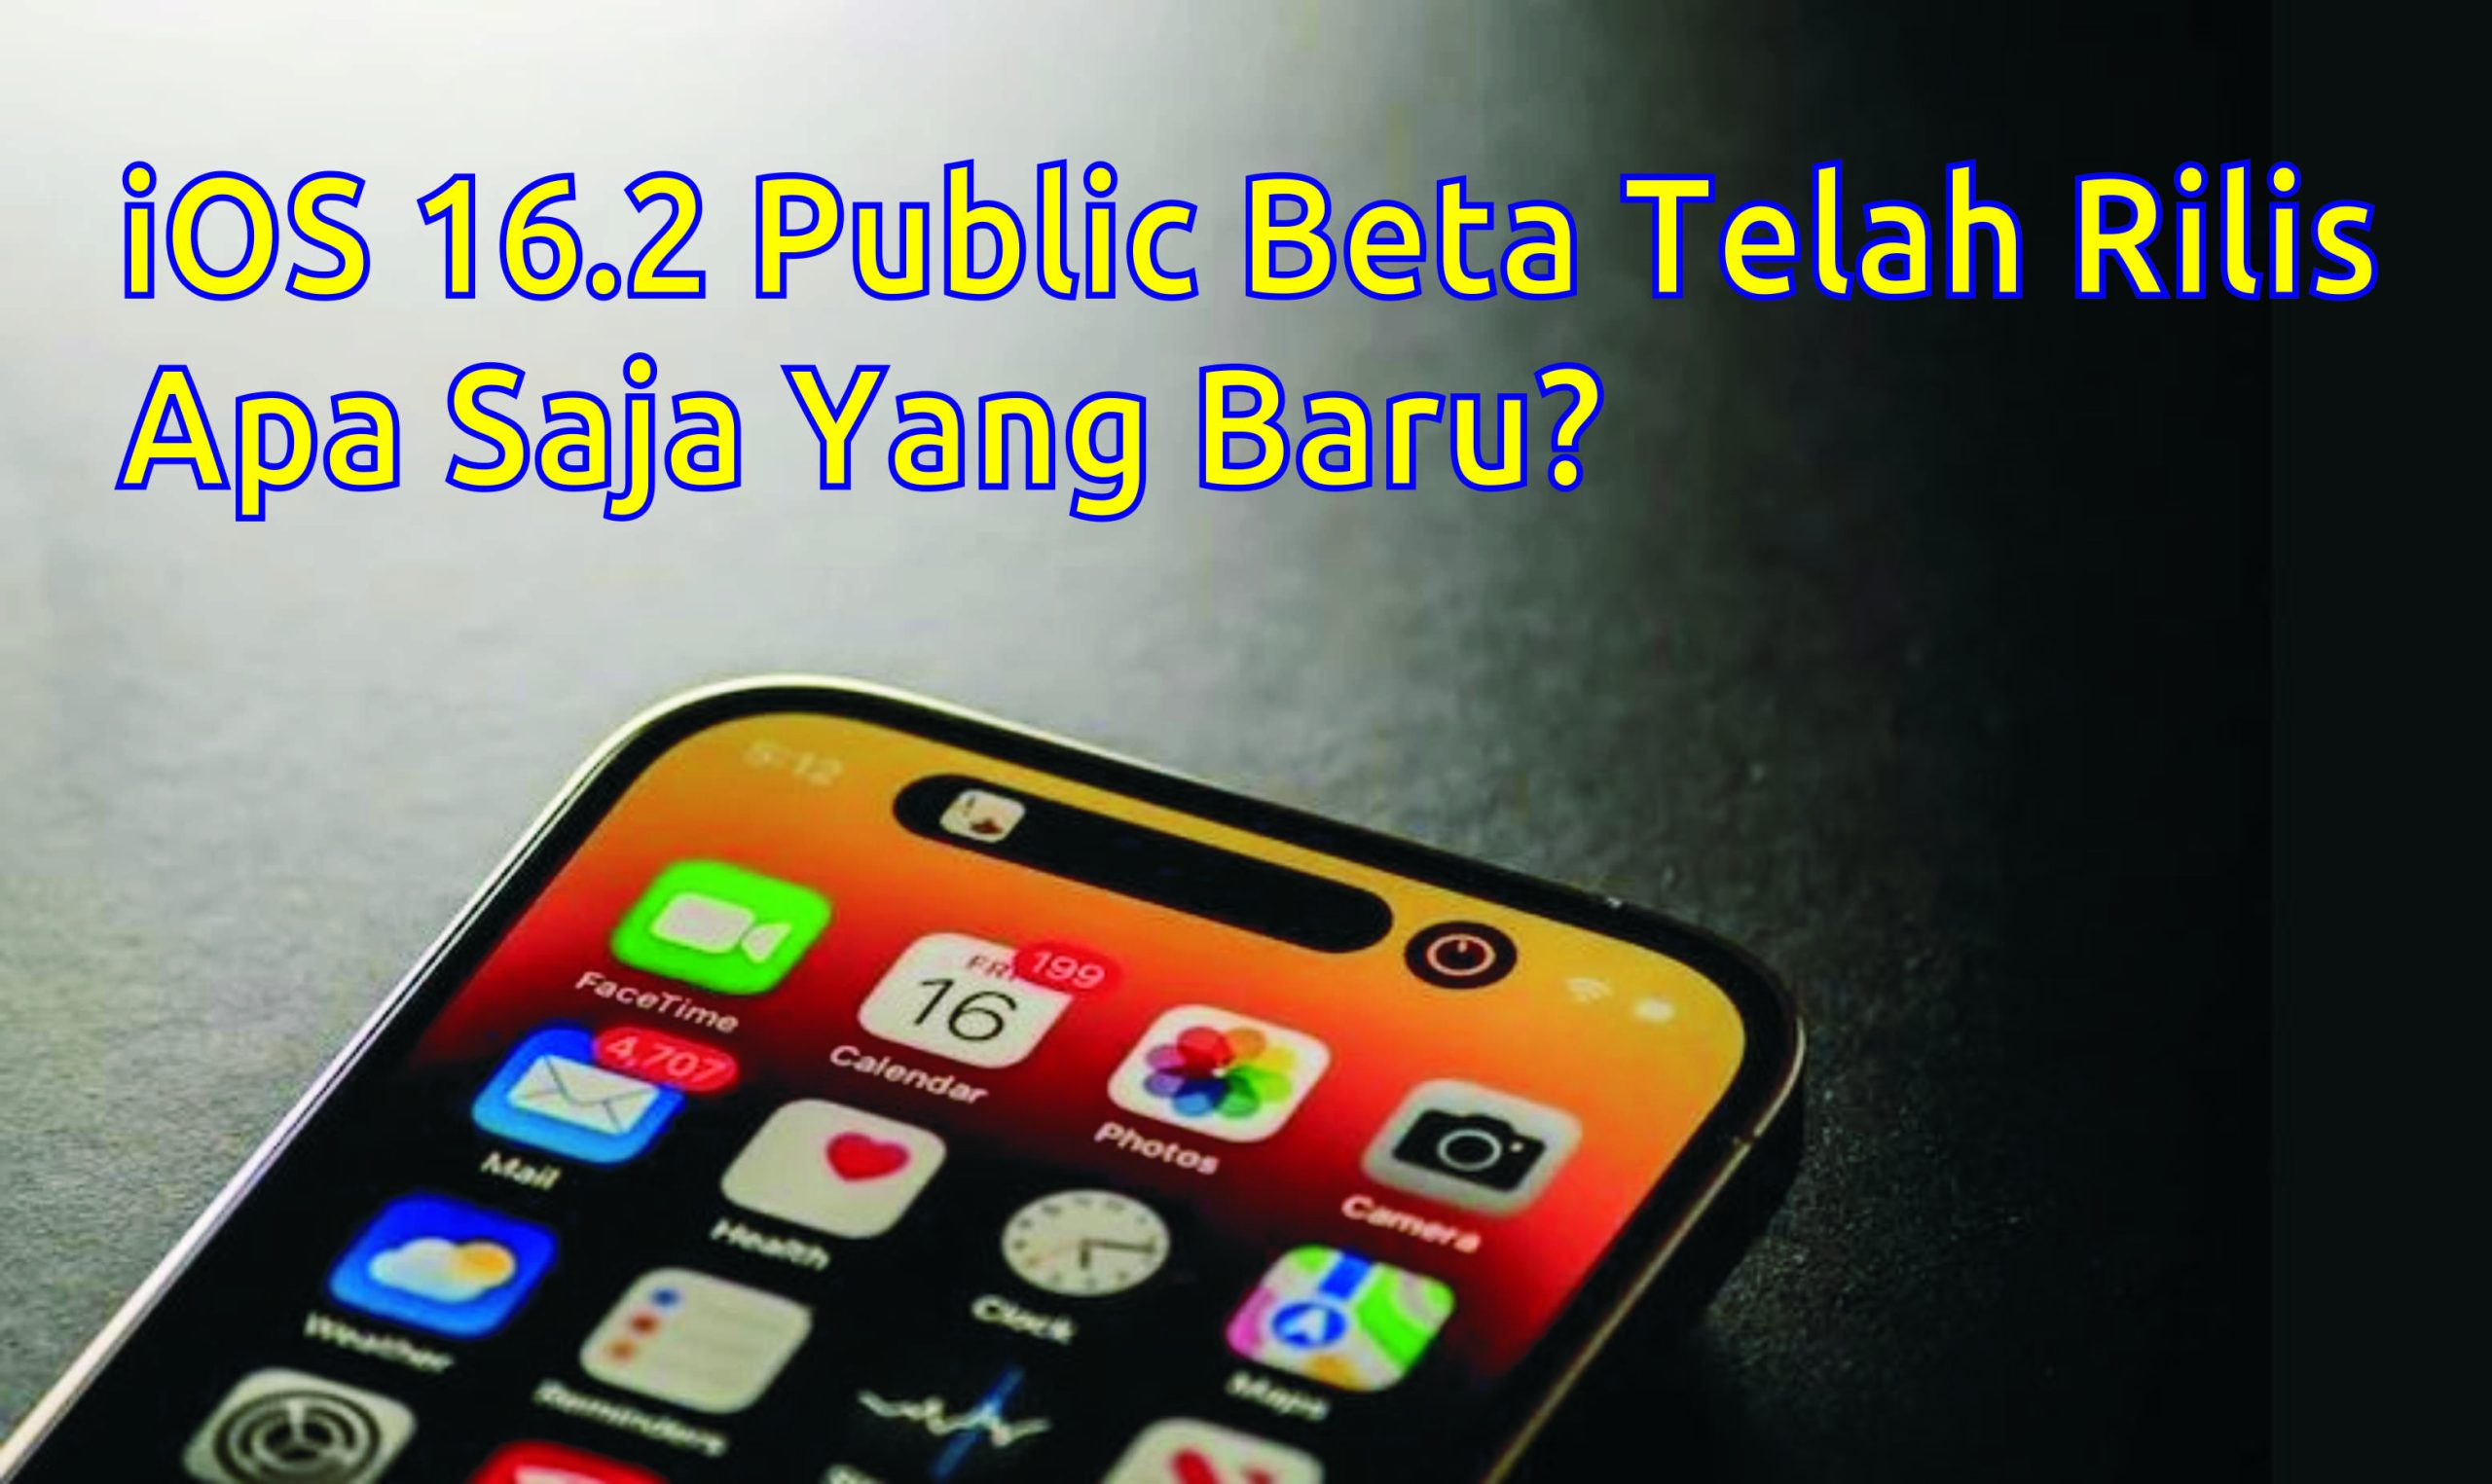 iOS 16.2 Public Beta